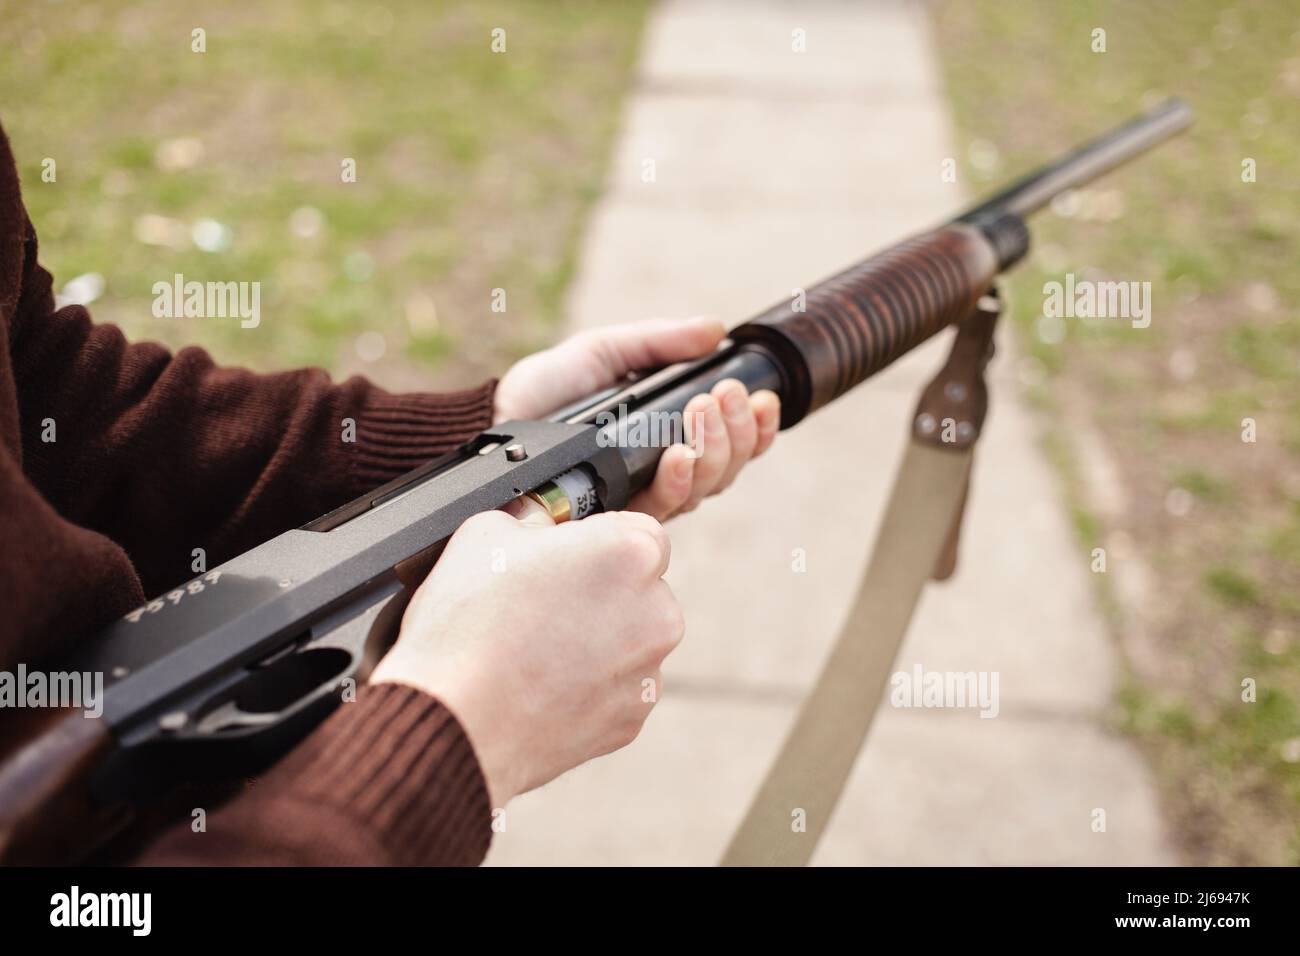 Un jeune homme charge un fusil à pompe avec un Ammo. calibre 12. Pneu extérieur. Un homme dans un casque et des lunettes se prépare à tirer. Armes à feu pour s Banque D'Images